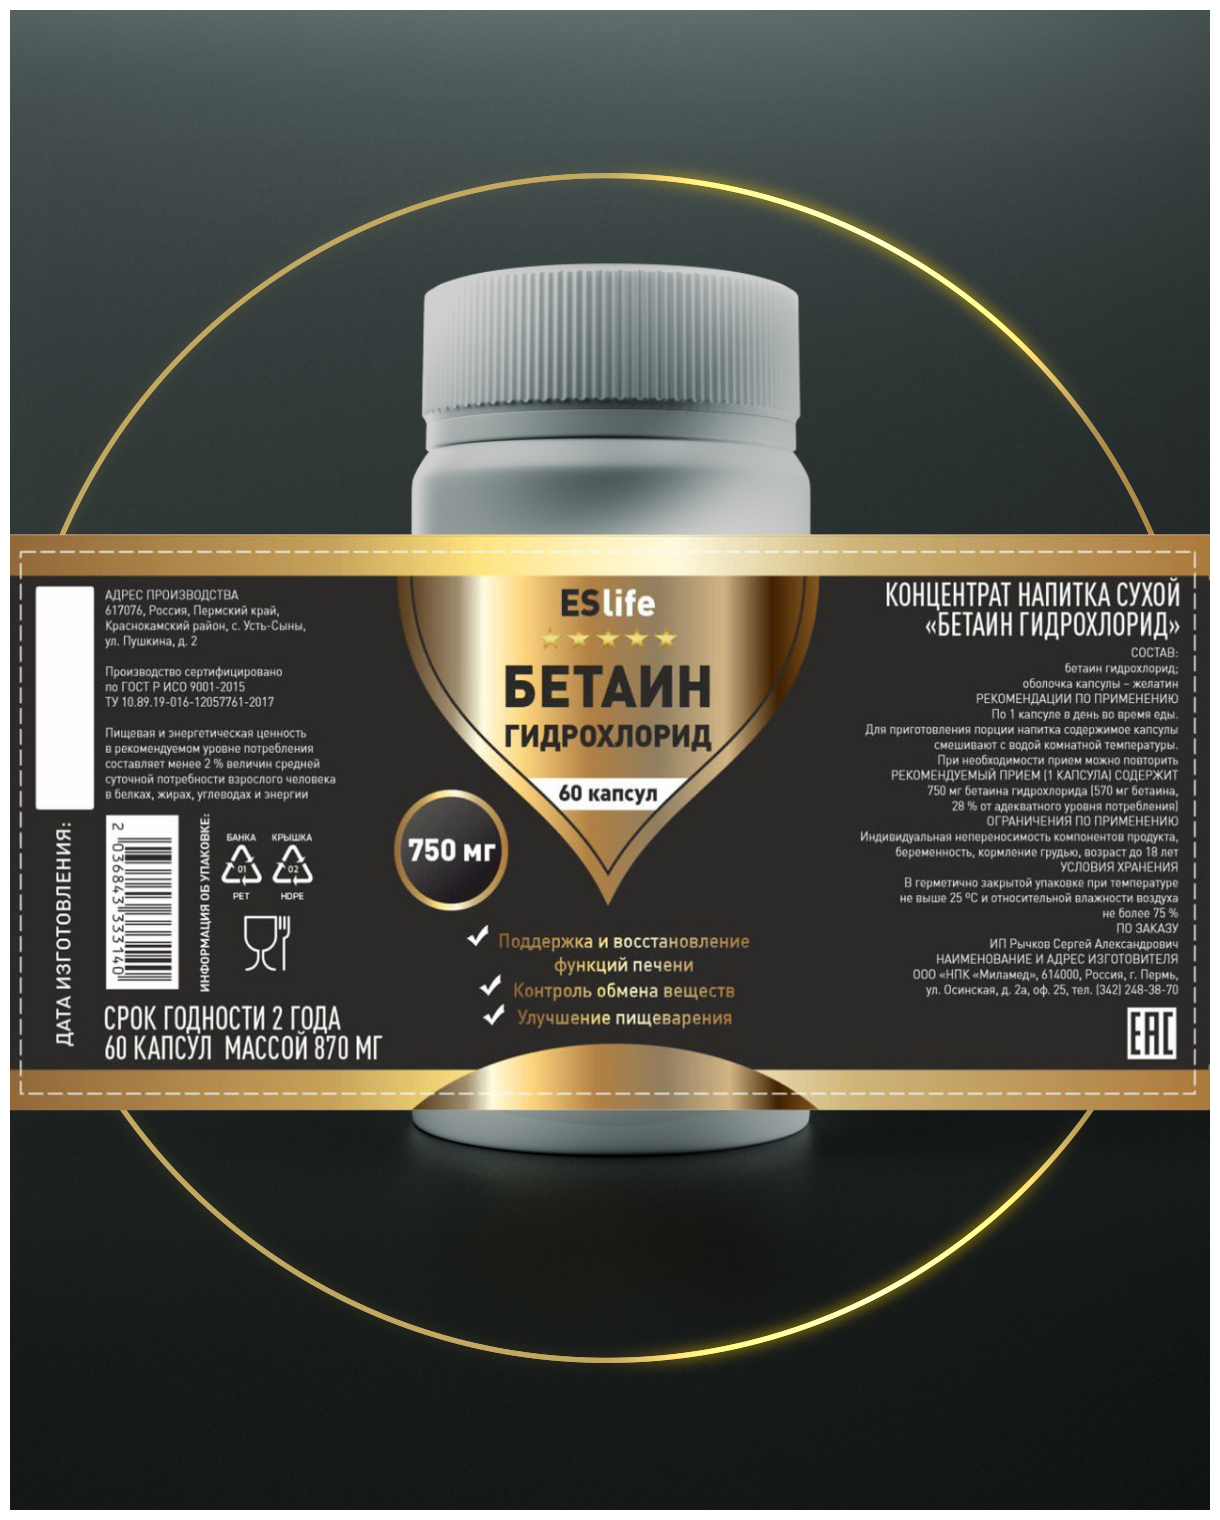 Бетаин гидрохлорид, 750 мг, 60 капсул, для пищеварения, для печени, для жкт, для обмена веществ, гепатопротектор, антиоксидант